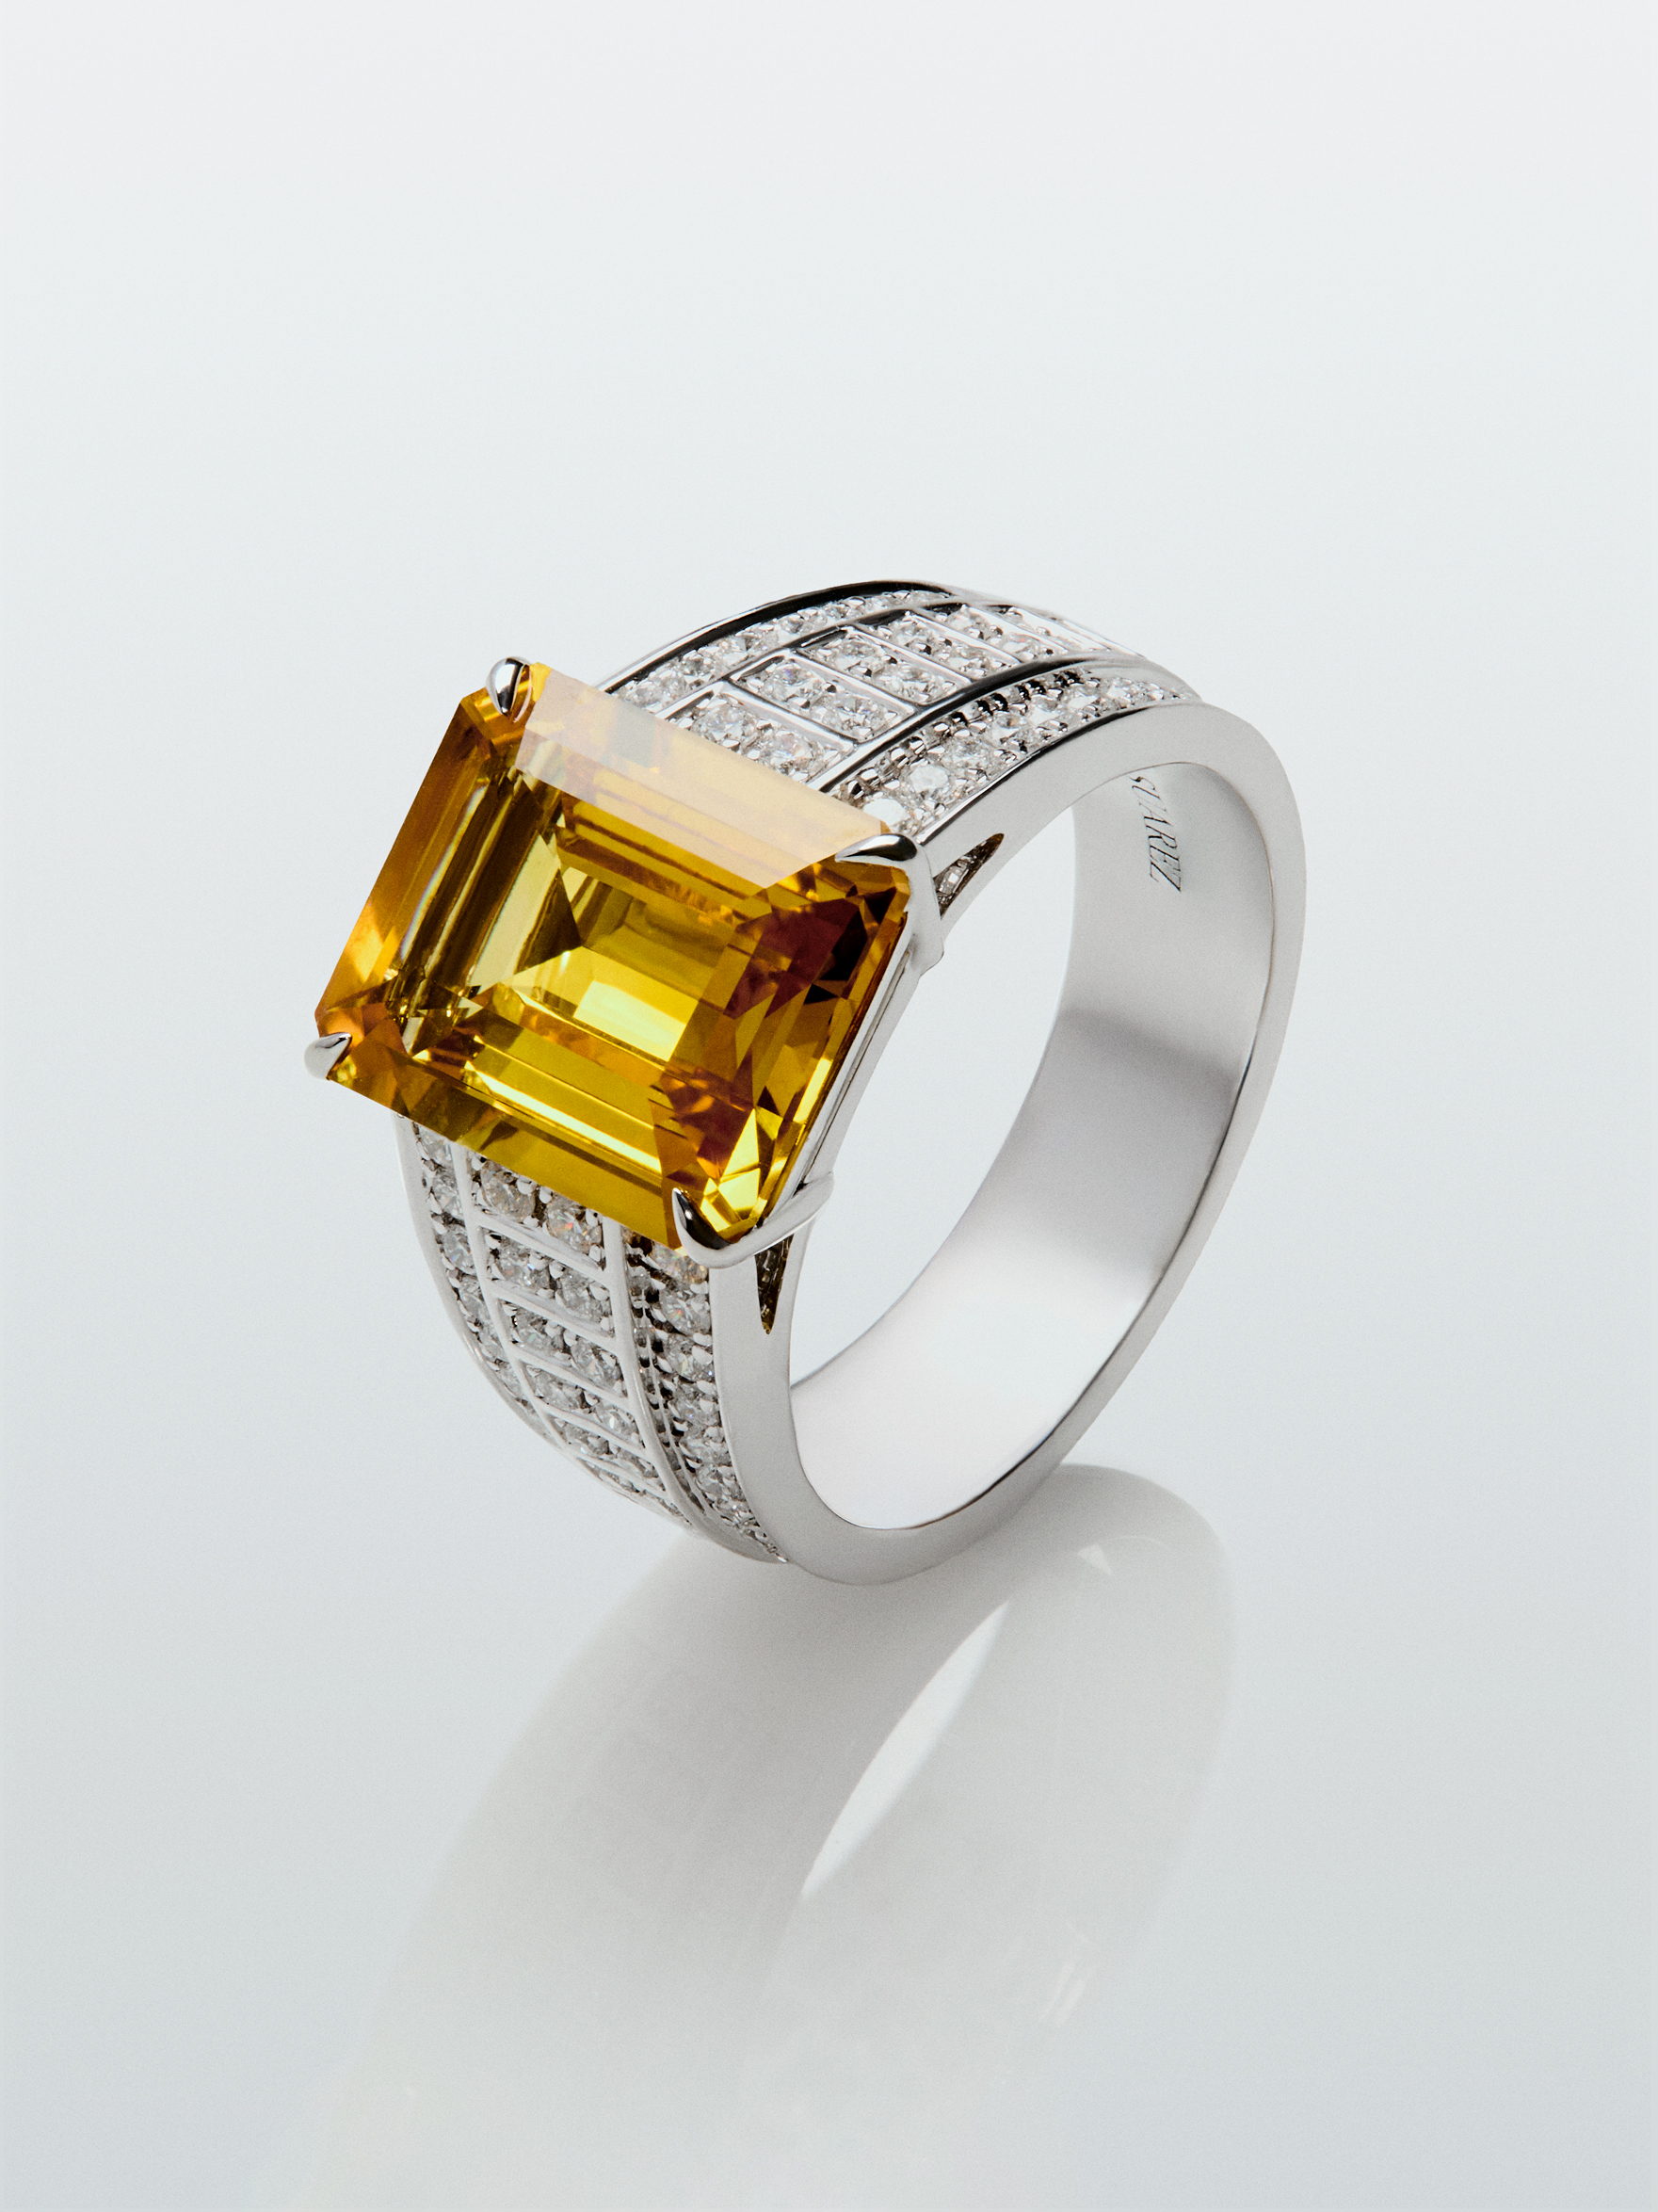 Anillo de oro blanco de 18K con zafiro amarillo en talla octogonal de 5,548 cts y 70 diamantes en talla brillante con un total de 0,45 cts